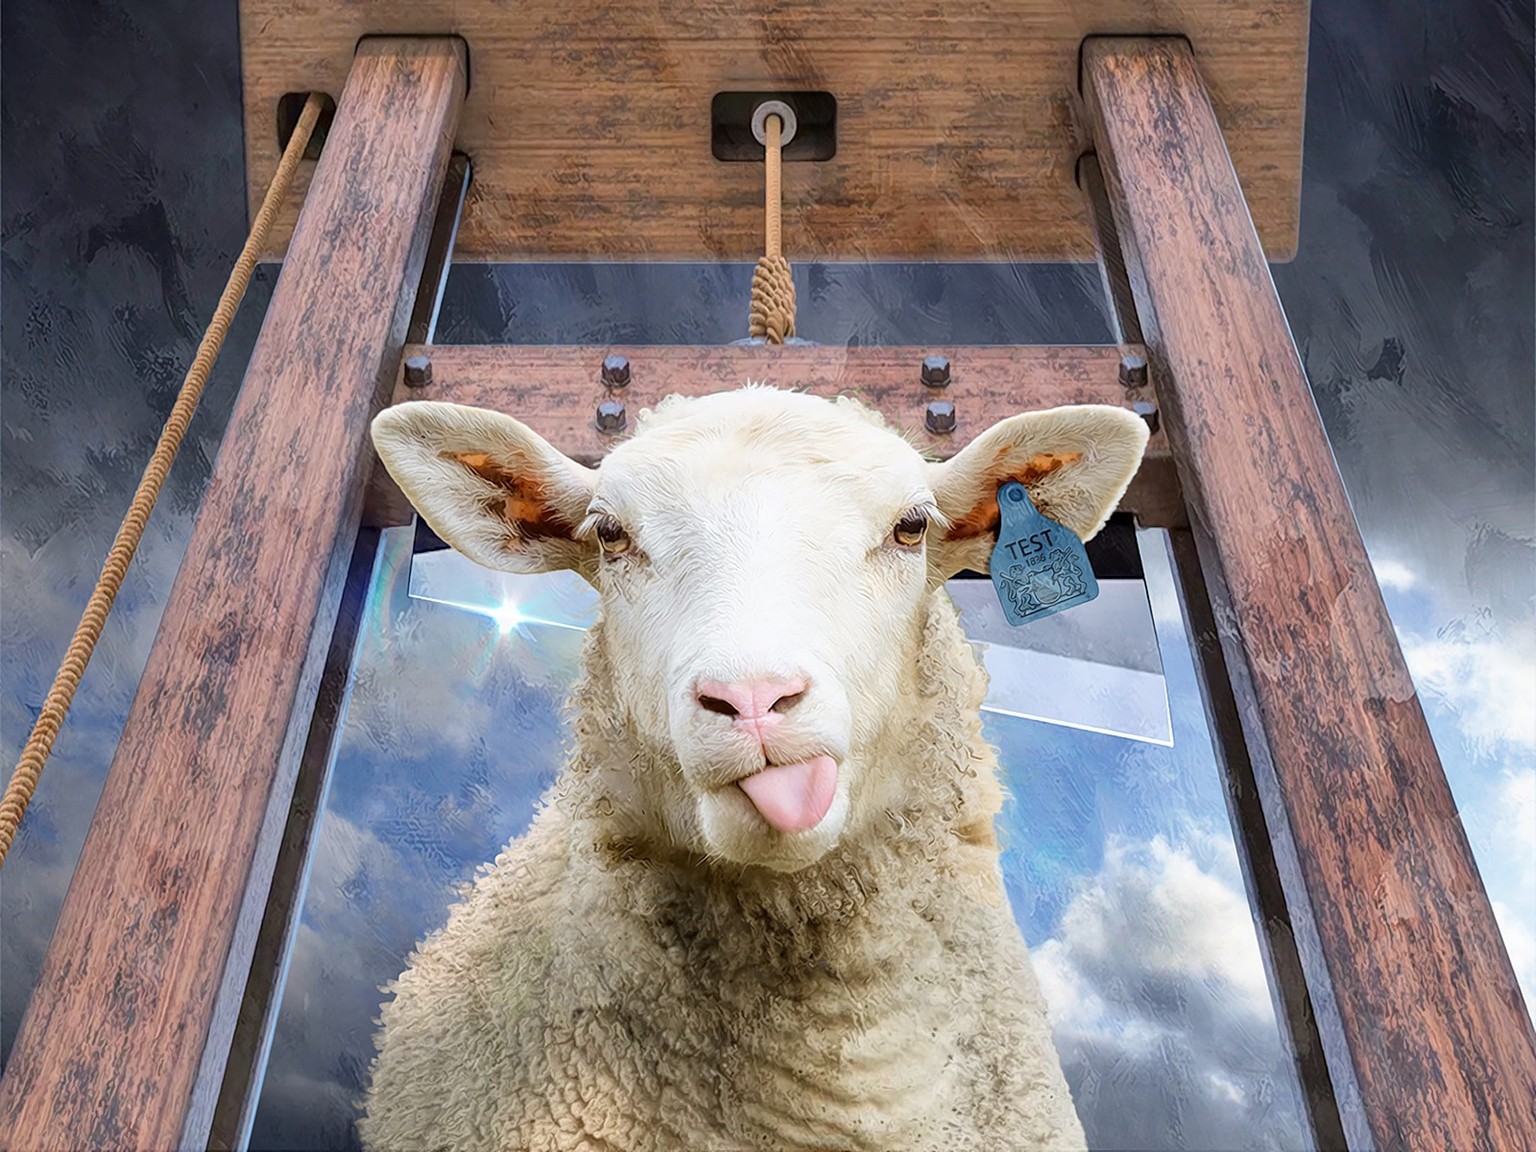 La guillotine zurichoise a été testée sur un mouton en 1836. 
https://achtung.be/arbeiten